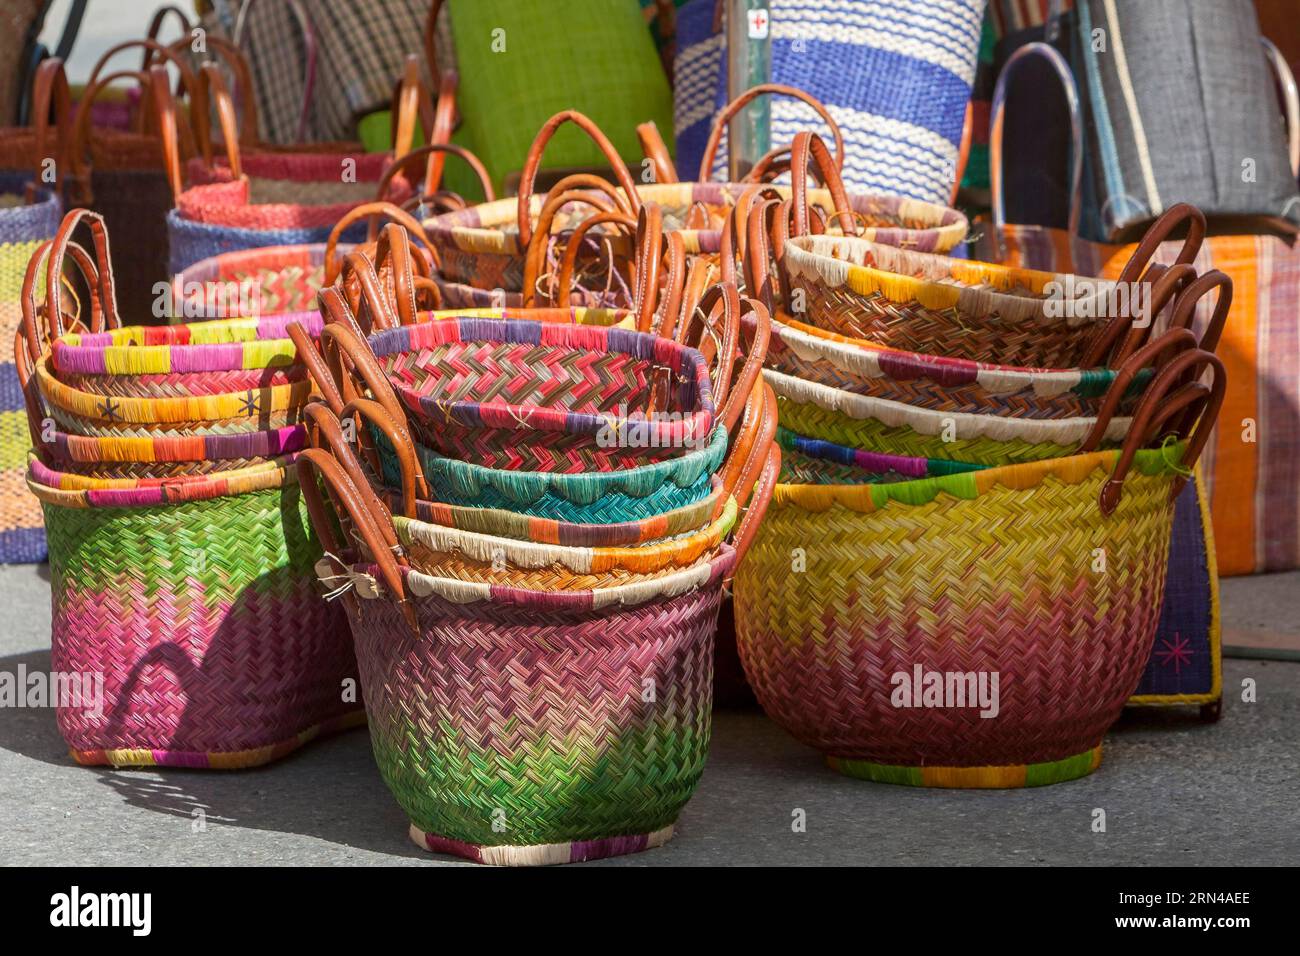 Bancarella con borse colorate, mercato settimanale, Sault, dipartimento di Vaucluse nella regione Provence-Alpes-Costa Azzurra, Francia Foto Stock